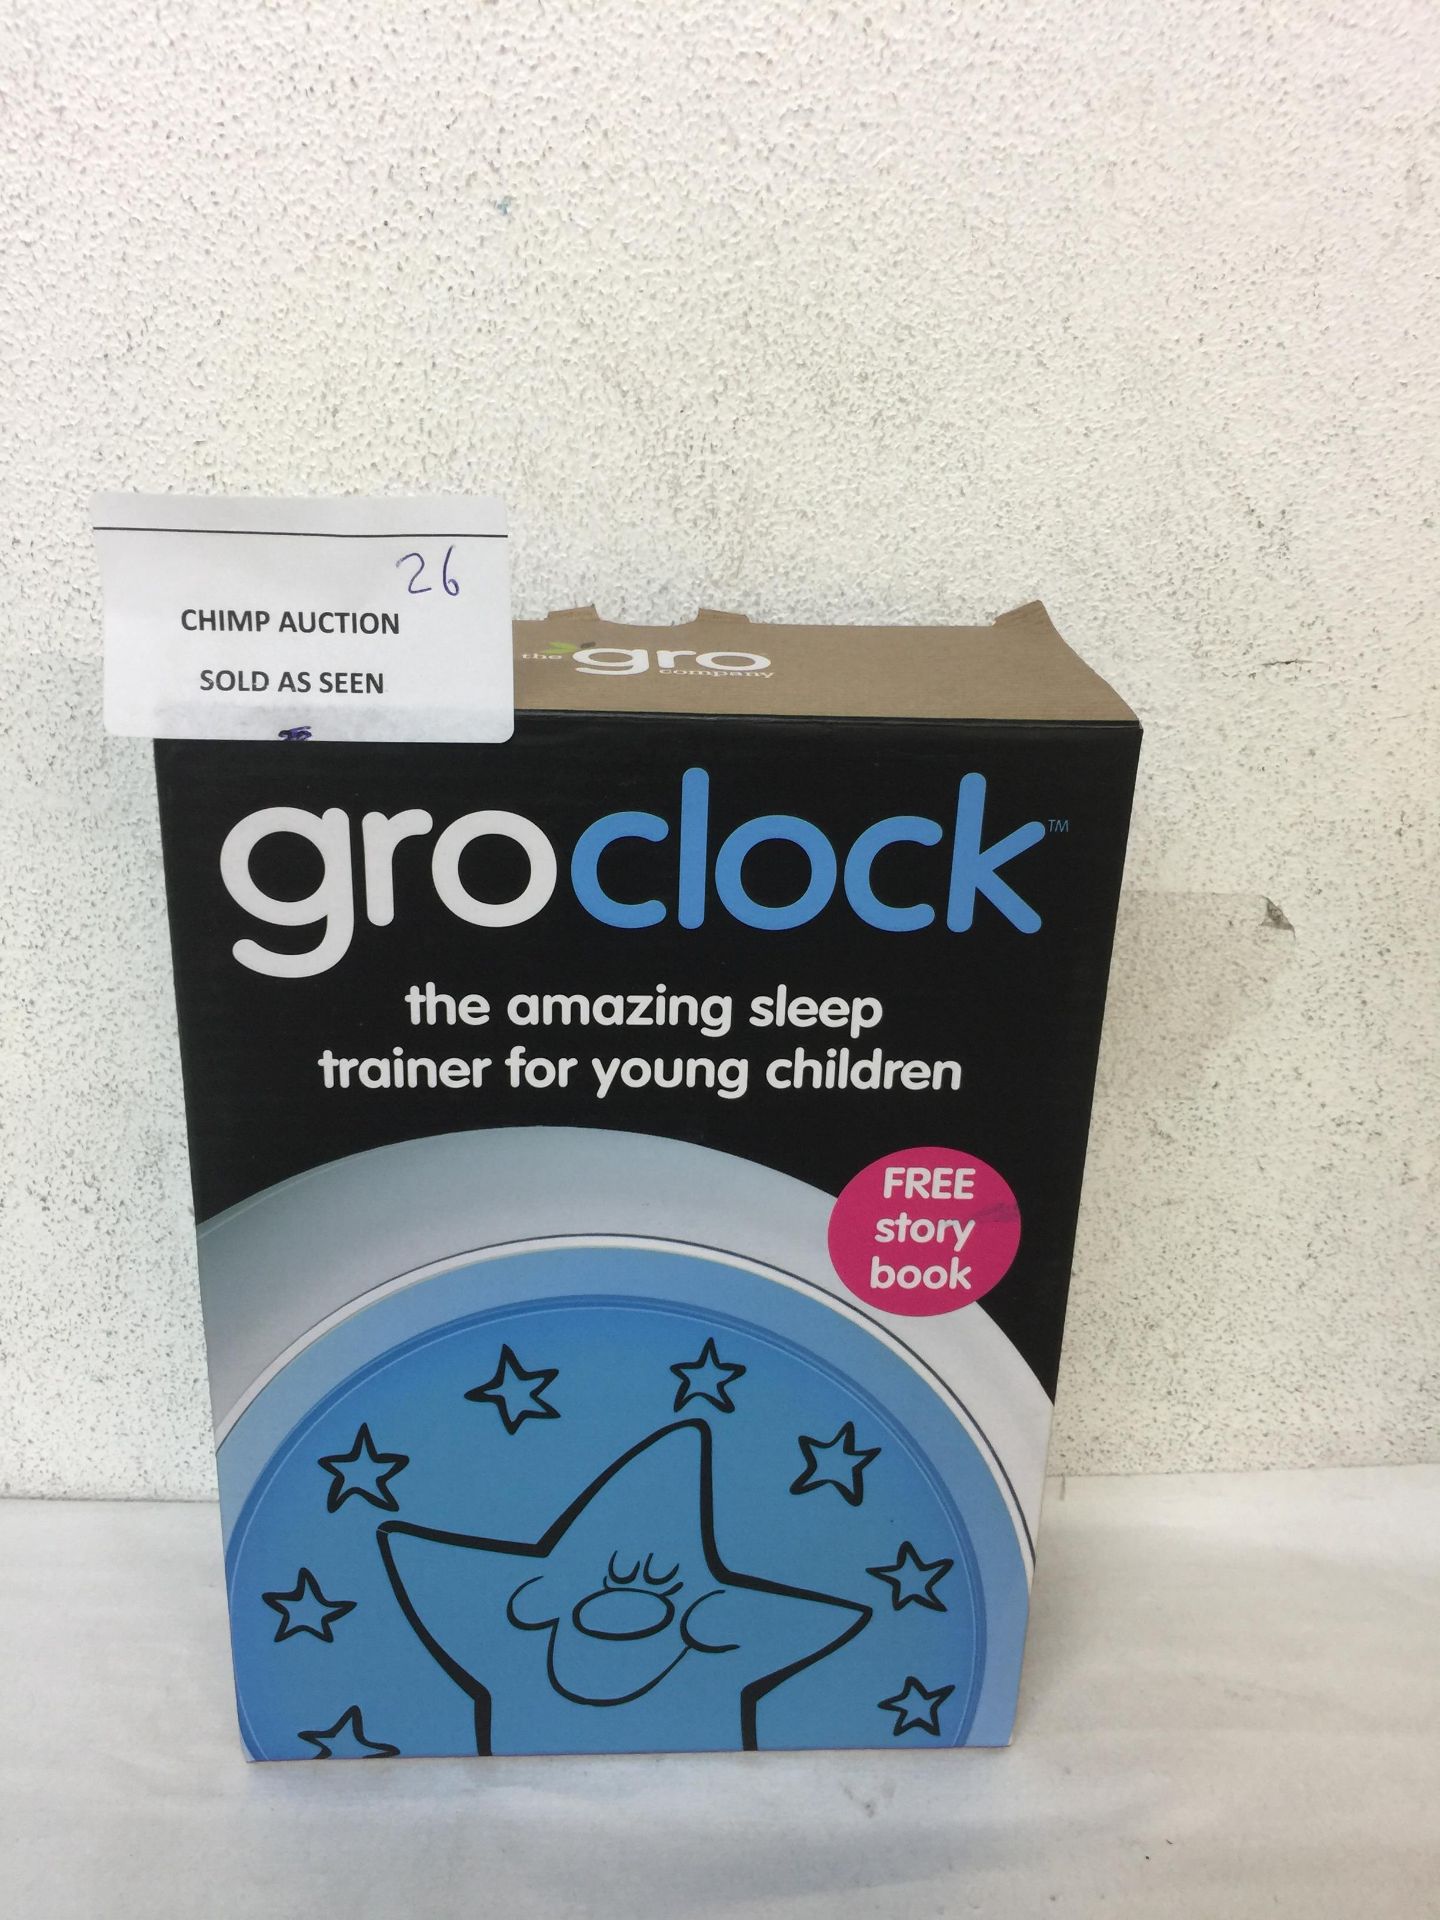 GRO CLOCK SLEEPING AID